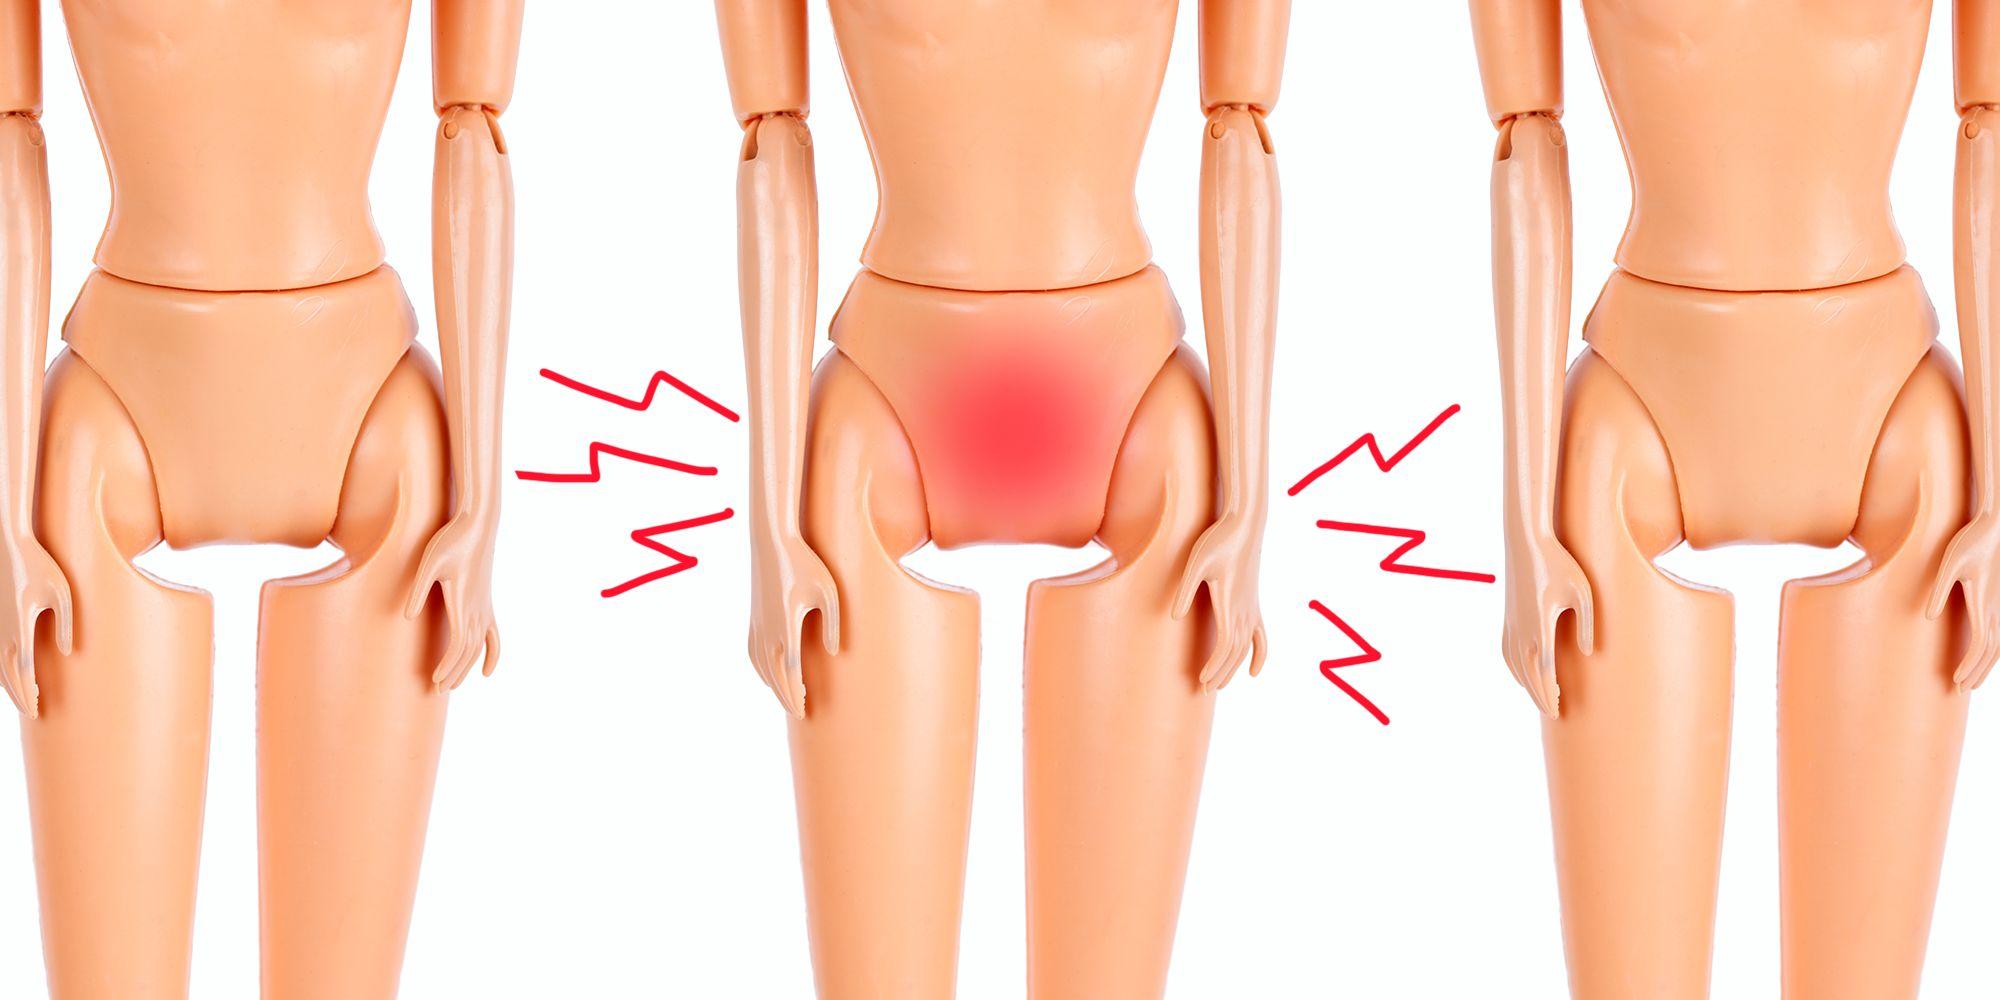 Why do women scratch their vulva